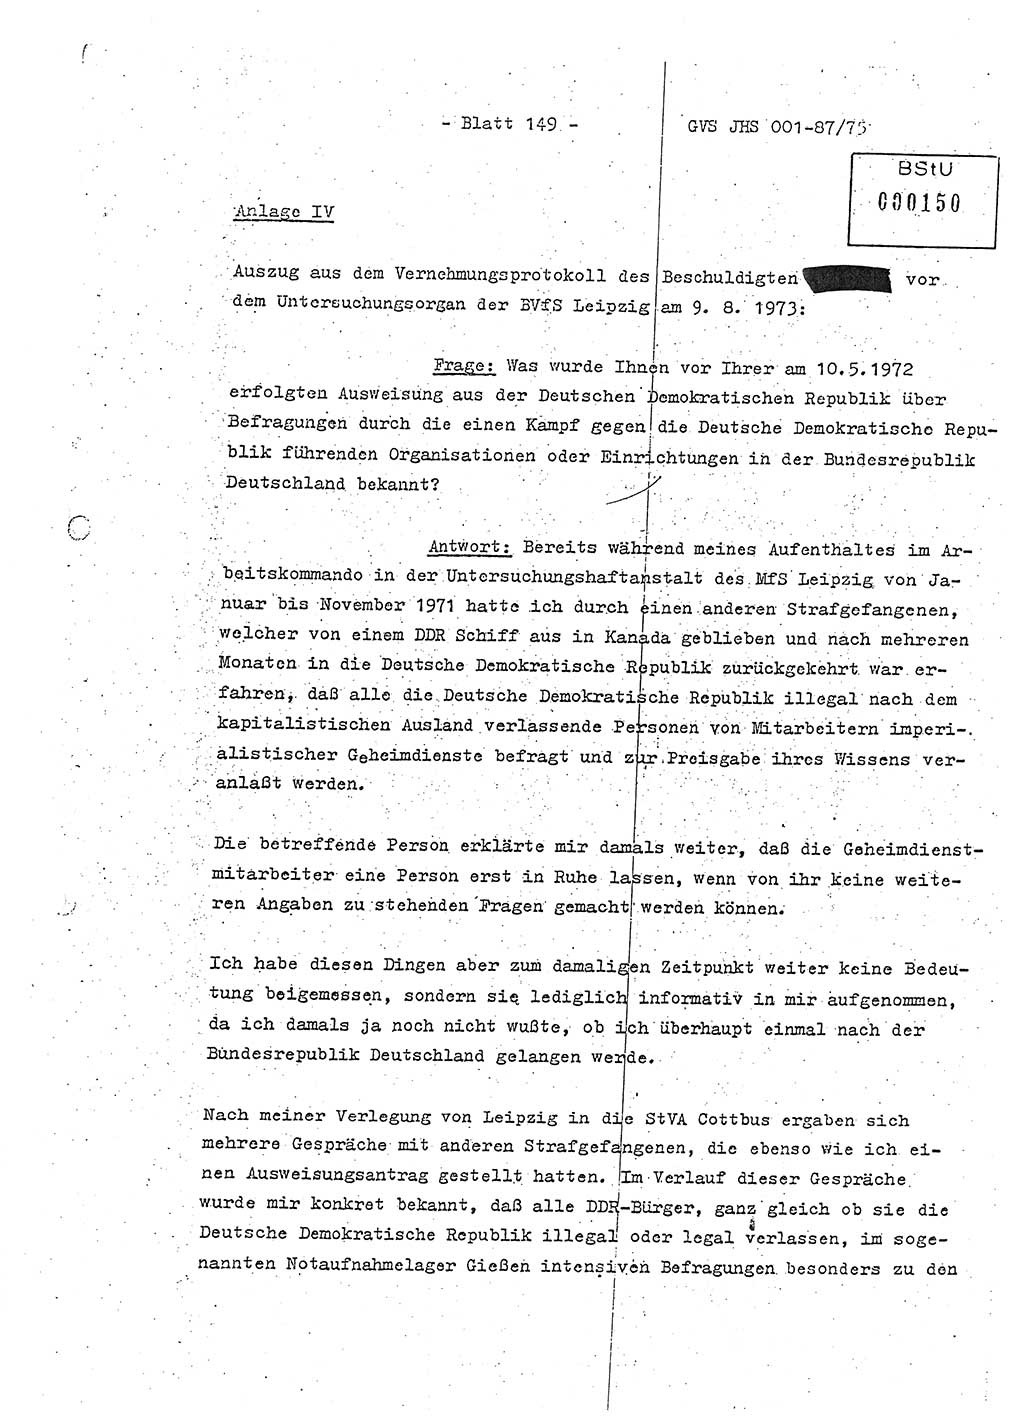 Diplomarbeit Hauptmann Volkmar Heinz (Abt. ⅩⅣ), Oberleutnant Lothar Rüdiger (BV Lpz. Abt. Ⅺ), Ministerium für Staatssicherheit (MfS) [Deutsche Demokratische Republik (DDR)], Juristische Hochschule (JHS), Geheime Verschlußsache (GVS) o001-87/75, Potsdam 1975, Seite 149 (Dipl.-Arb. MfS DDR JHS GVS o001-87/75 1975, S. 149)